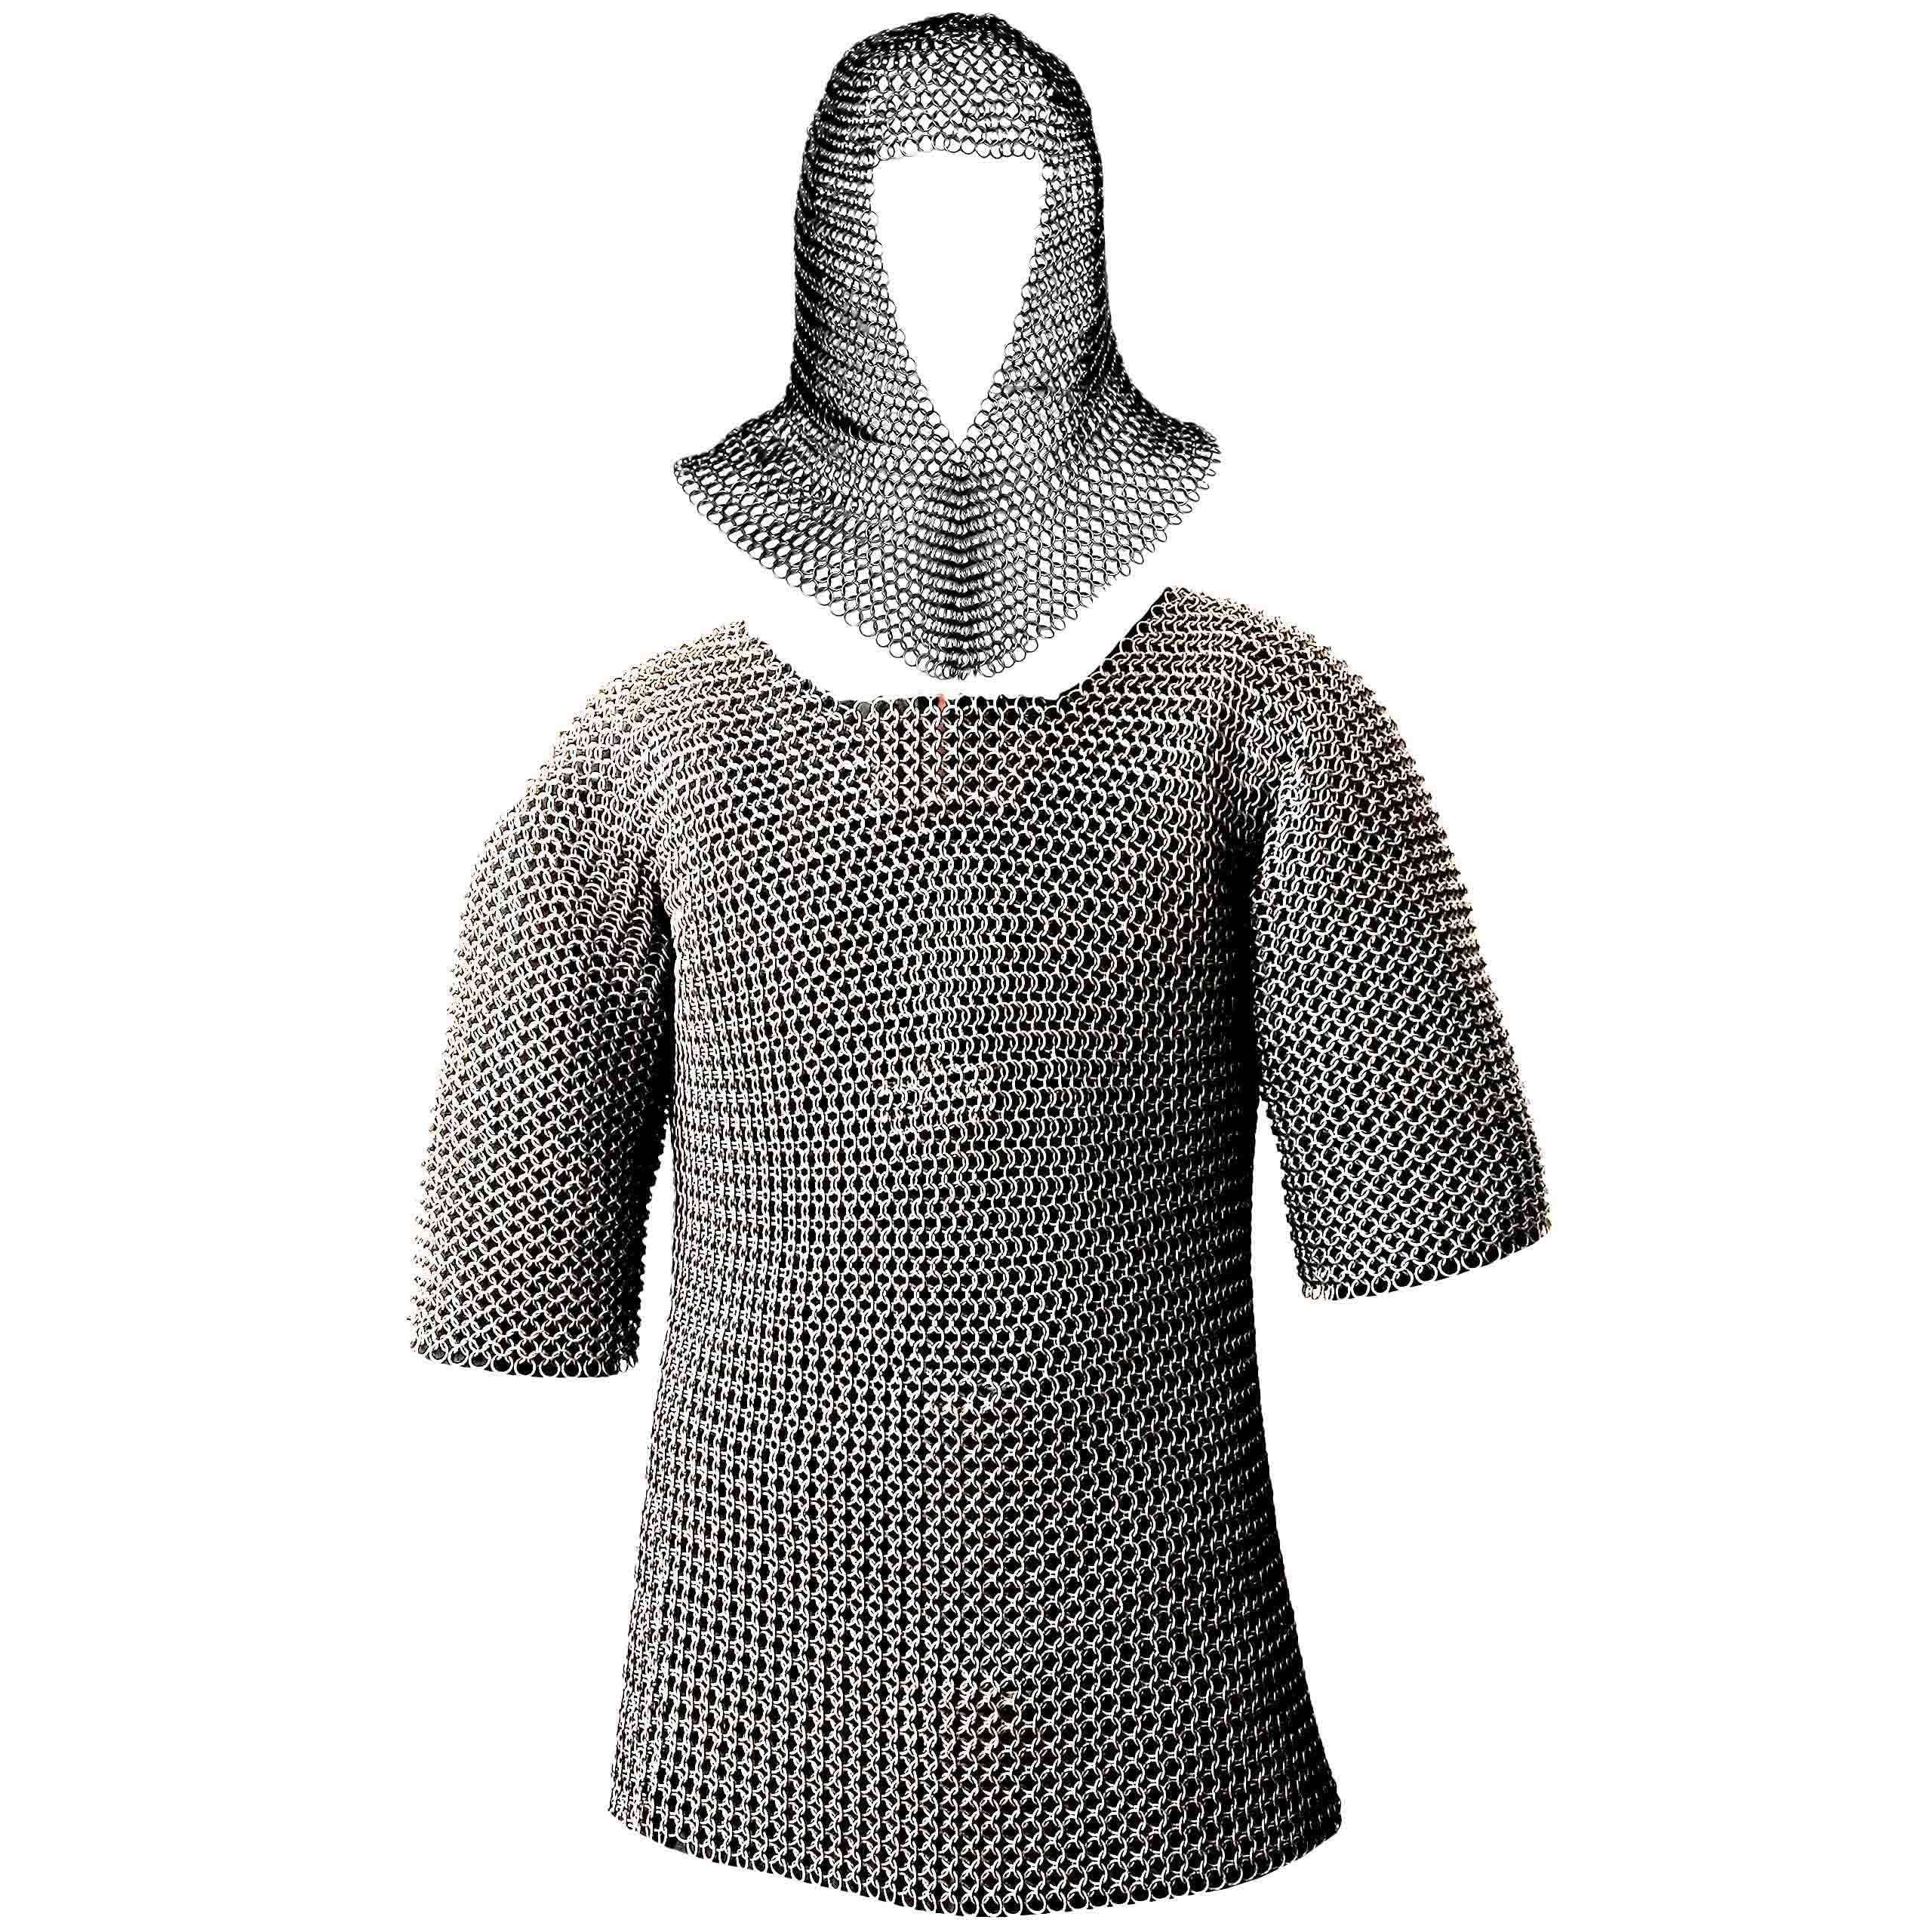 Chain Mail Armor Shirt - Pearson's Renaissance Shoppe